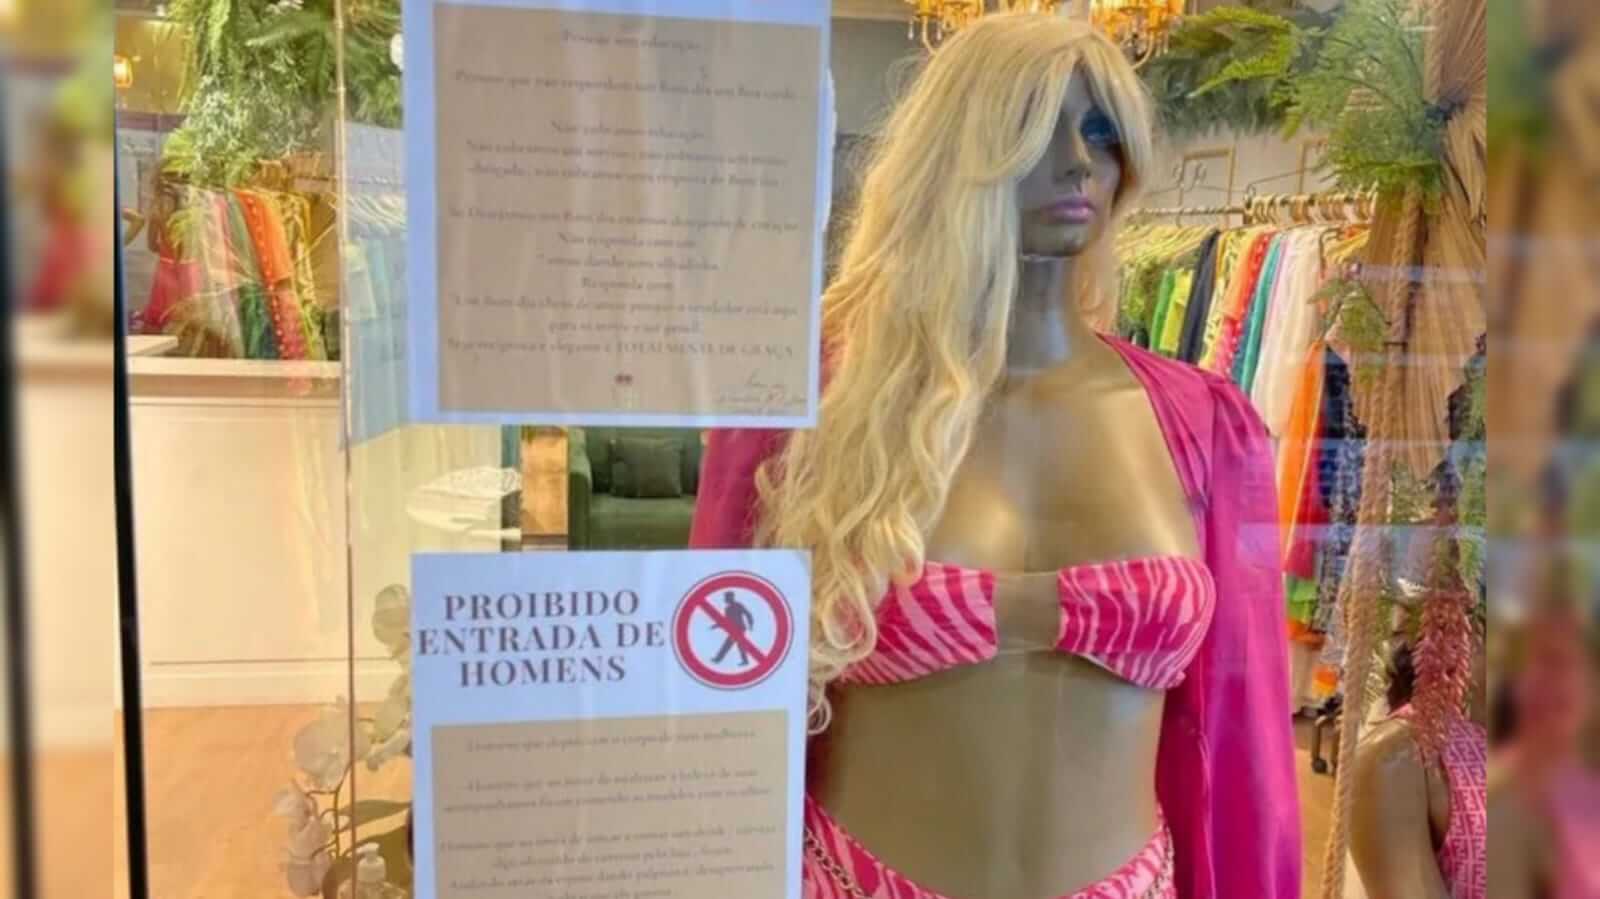 Vitrine de loja feminina em São José dos Campos com cartazes proibindo a entrada de homens